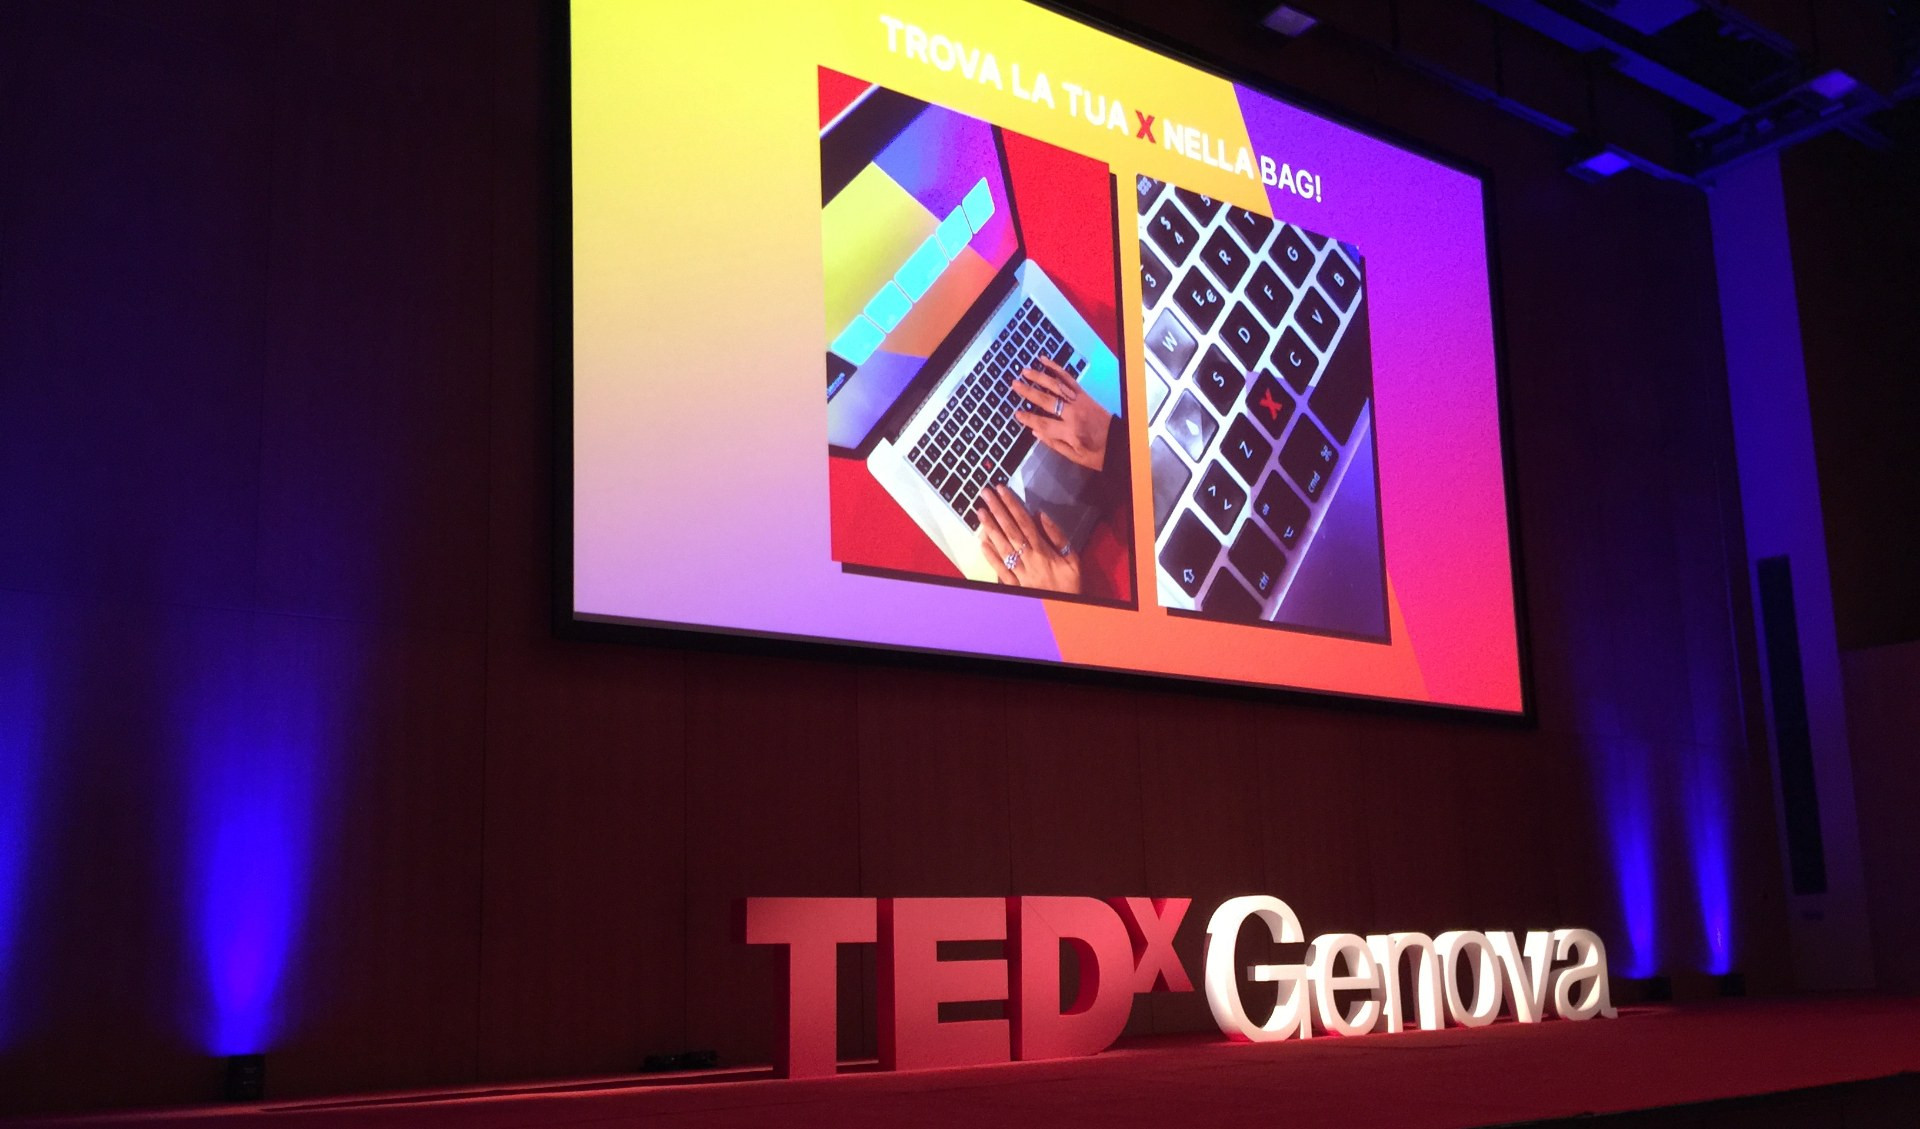 Nucleare, sostenibilità, carcere: il Tedx Genova conquista il pubblico